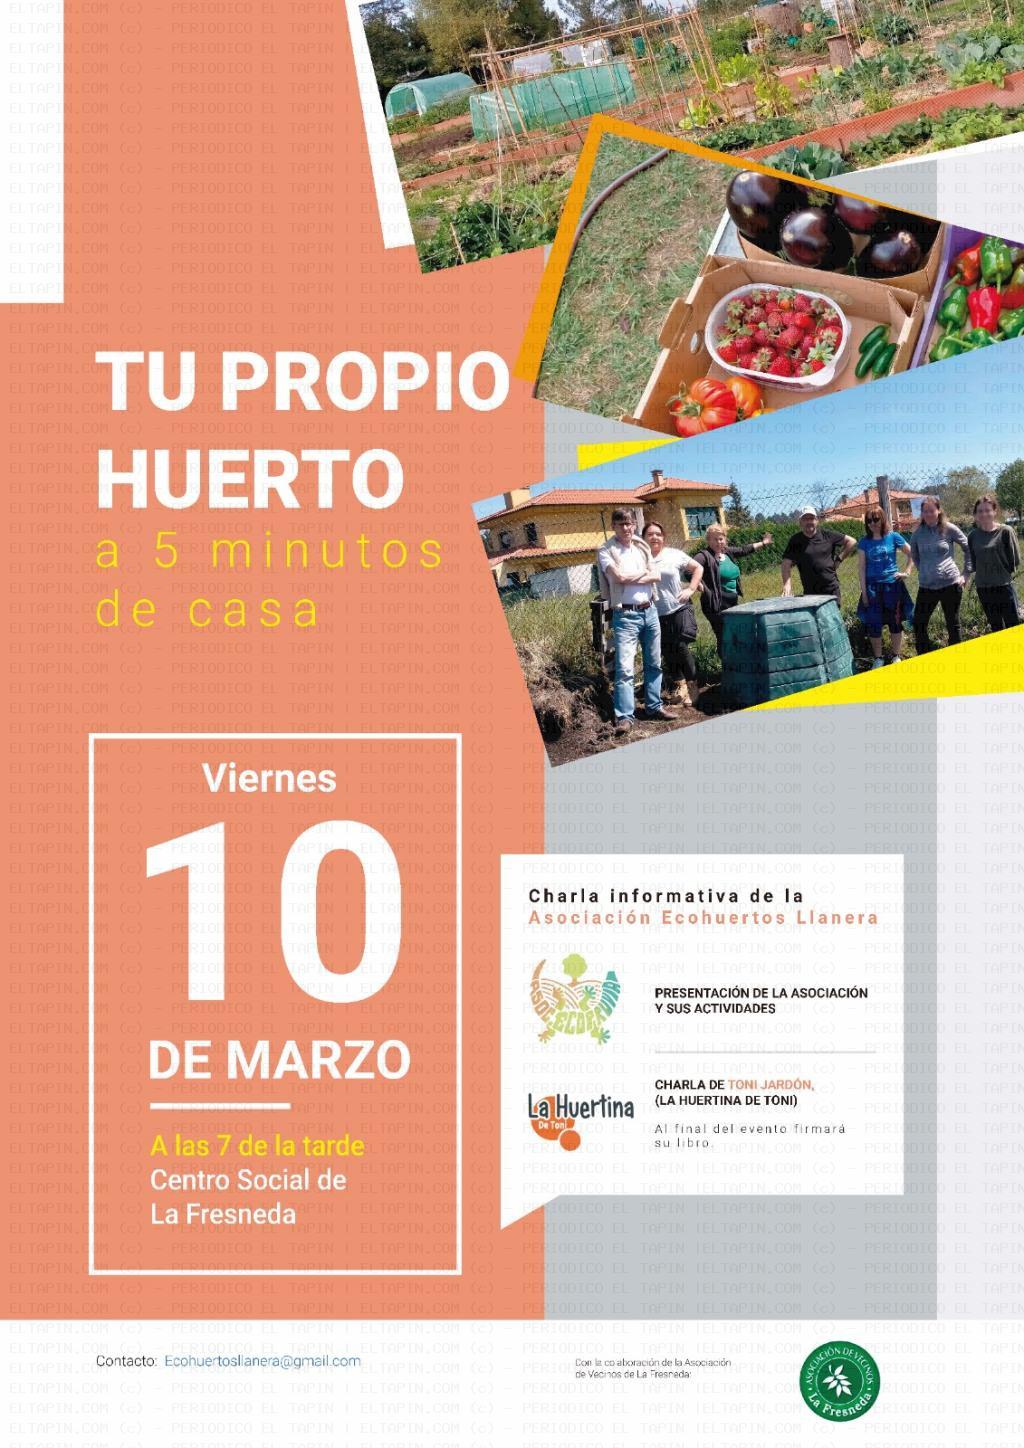 El Tapin - Charla sobre los huertos ecológicos en La Fresneda el 10 de marzo 